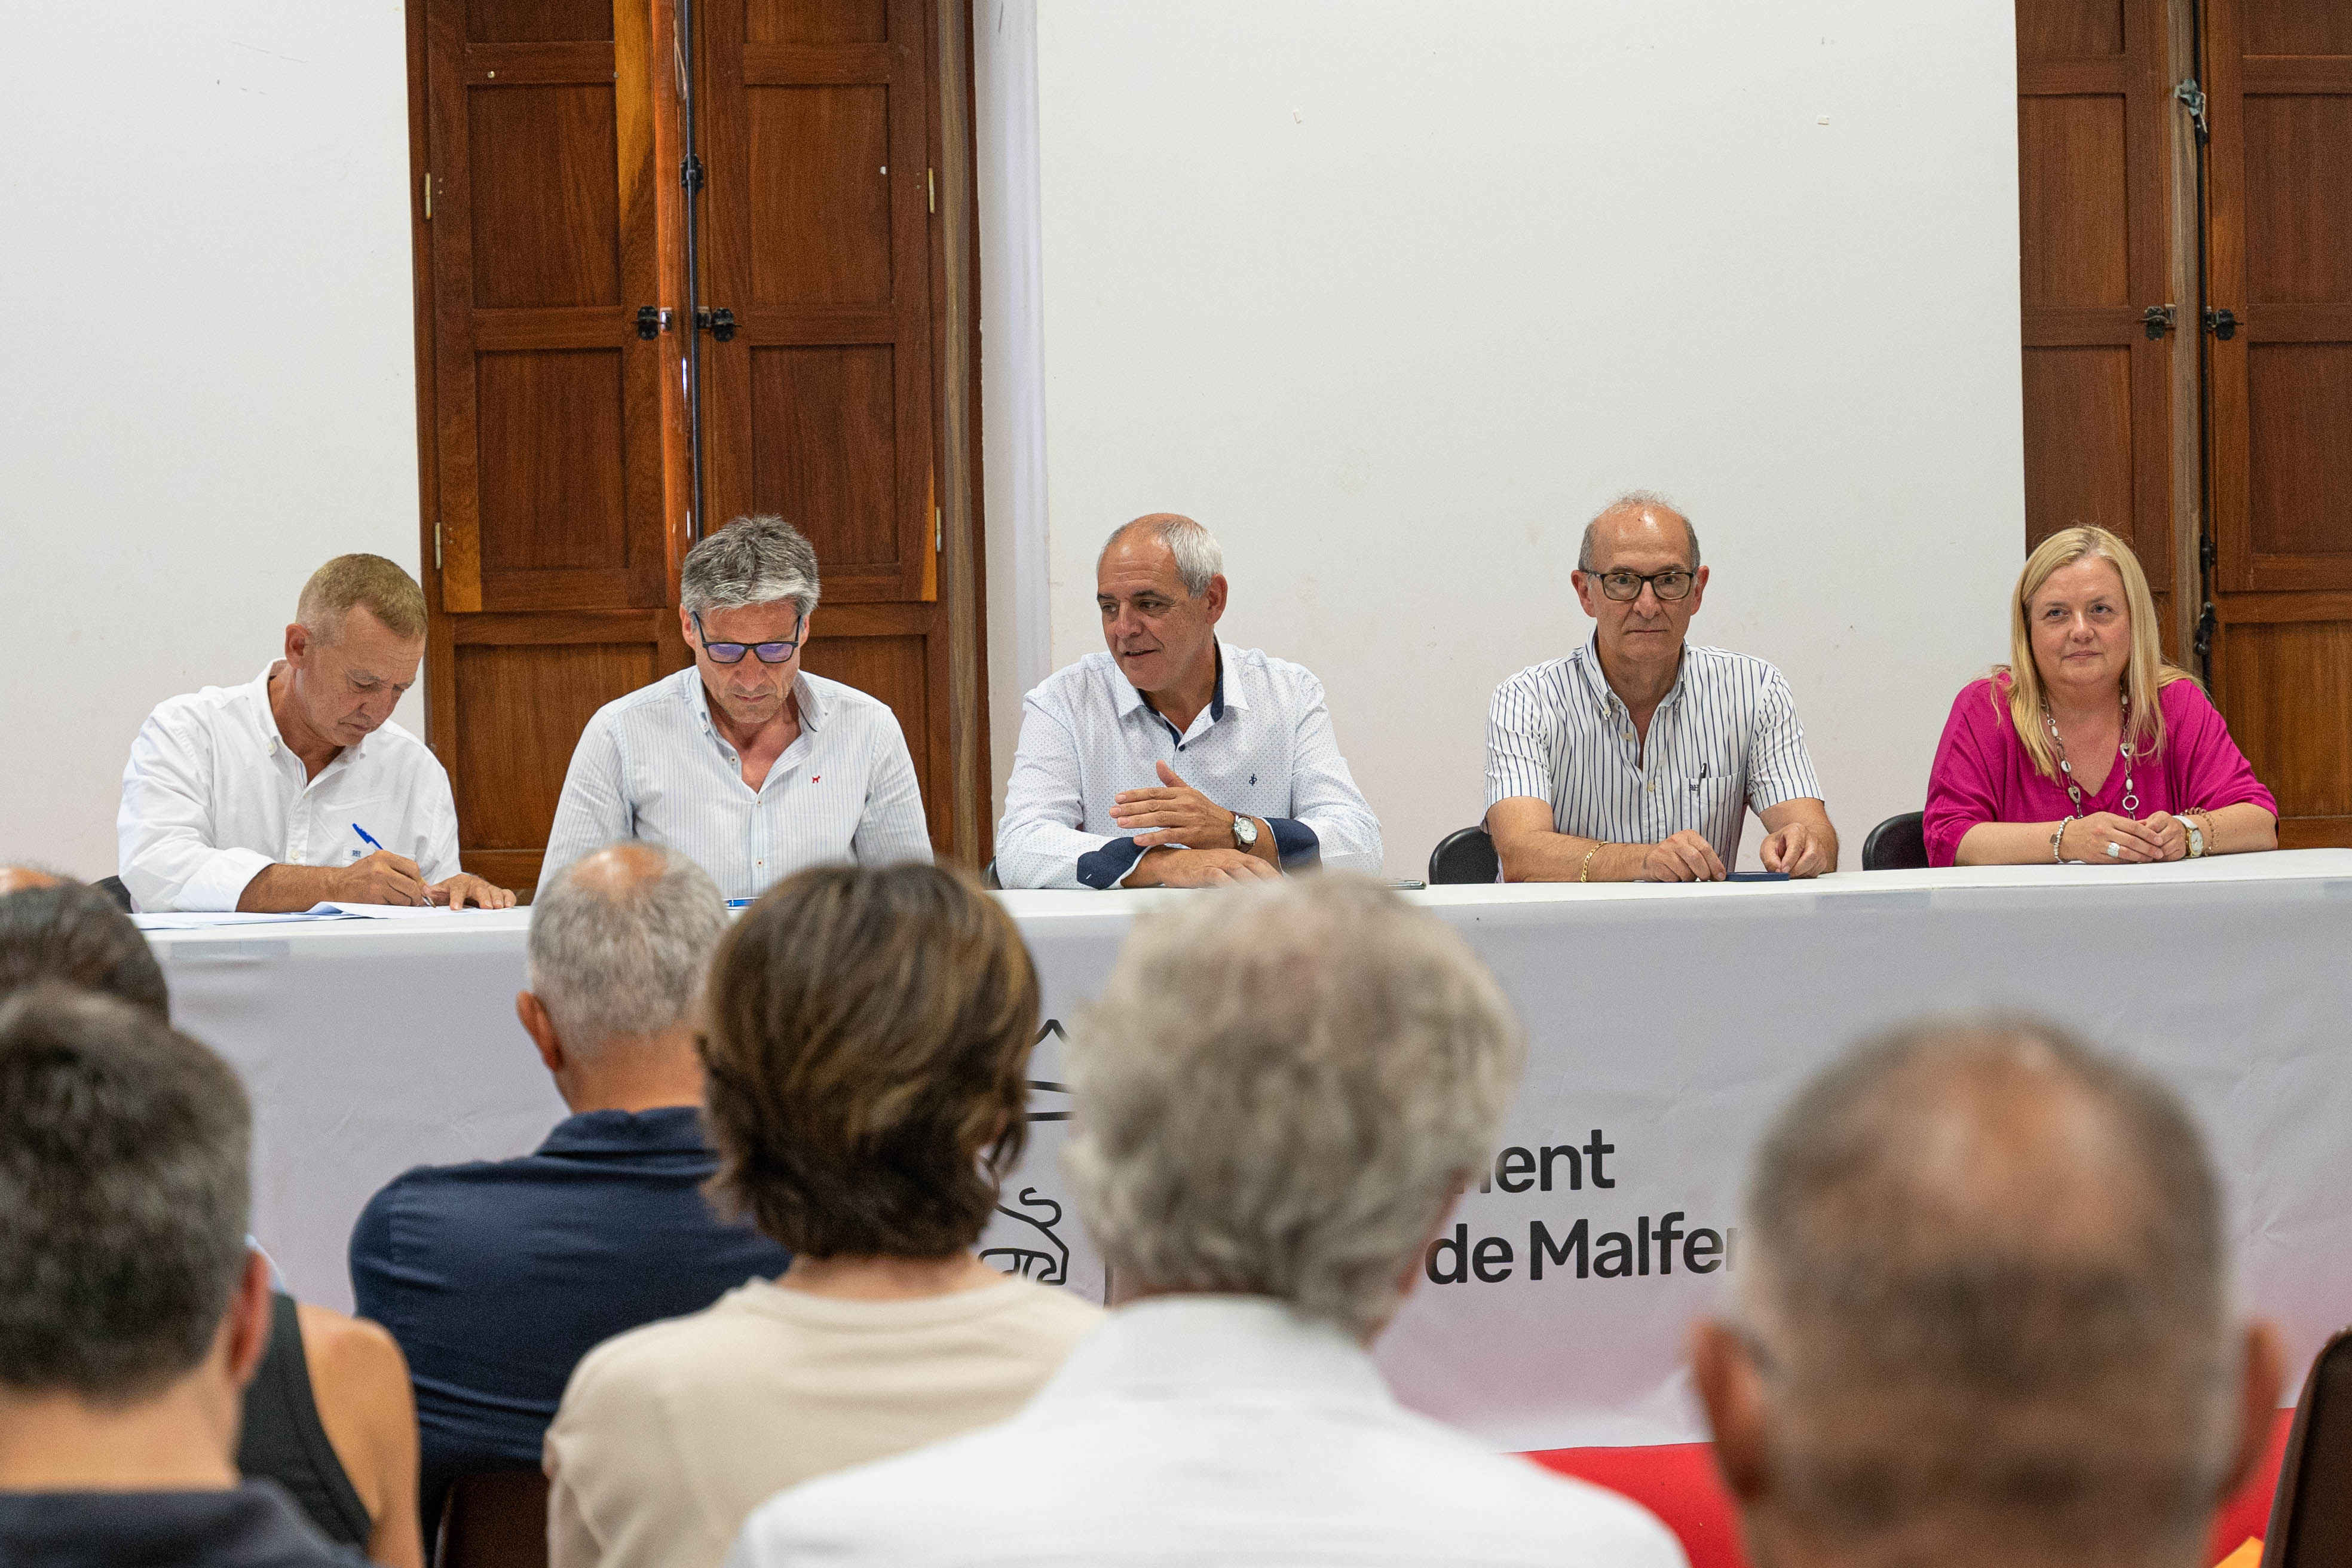 Notícia Comarcal TV: L’empresarial de la Vall d’Albaida COEVAL celebra la seua junta directiva a Aielo de Malferit